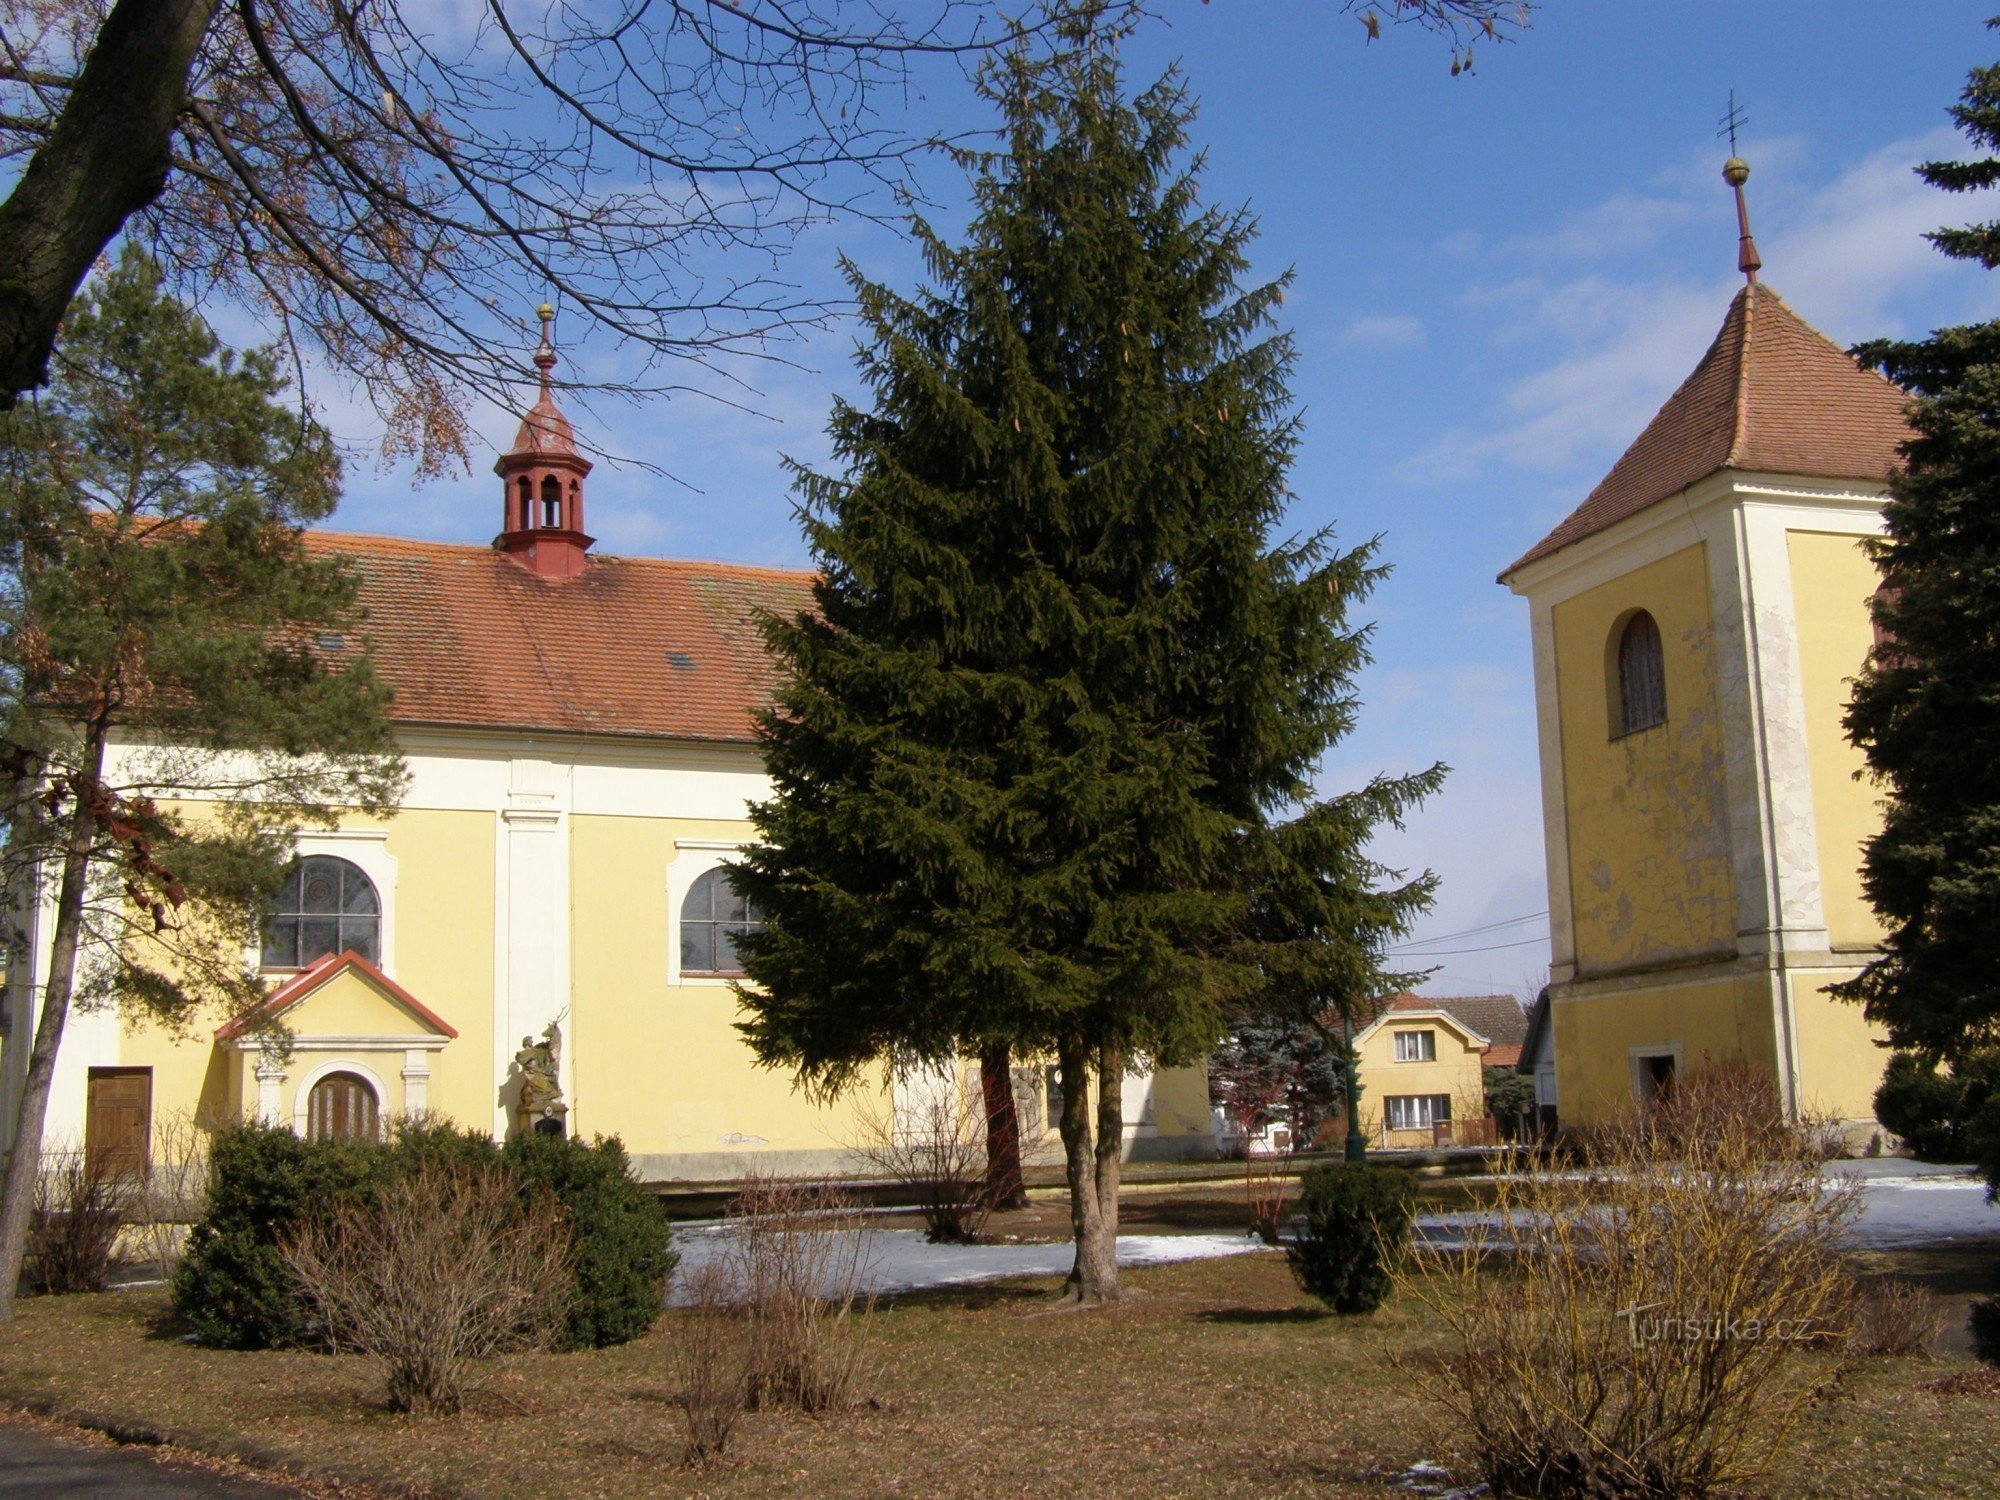 Lovčice - Iglesia de St. Bartolomé con el campanario